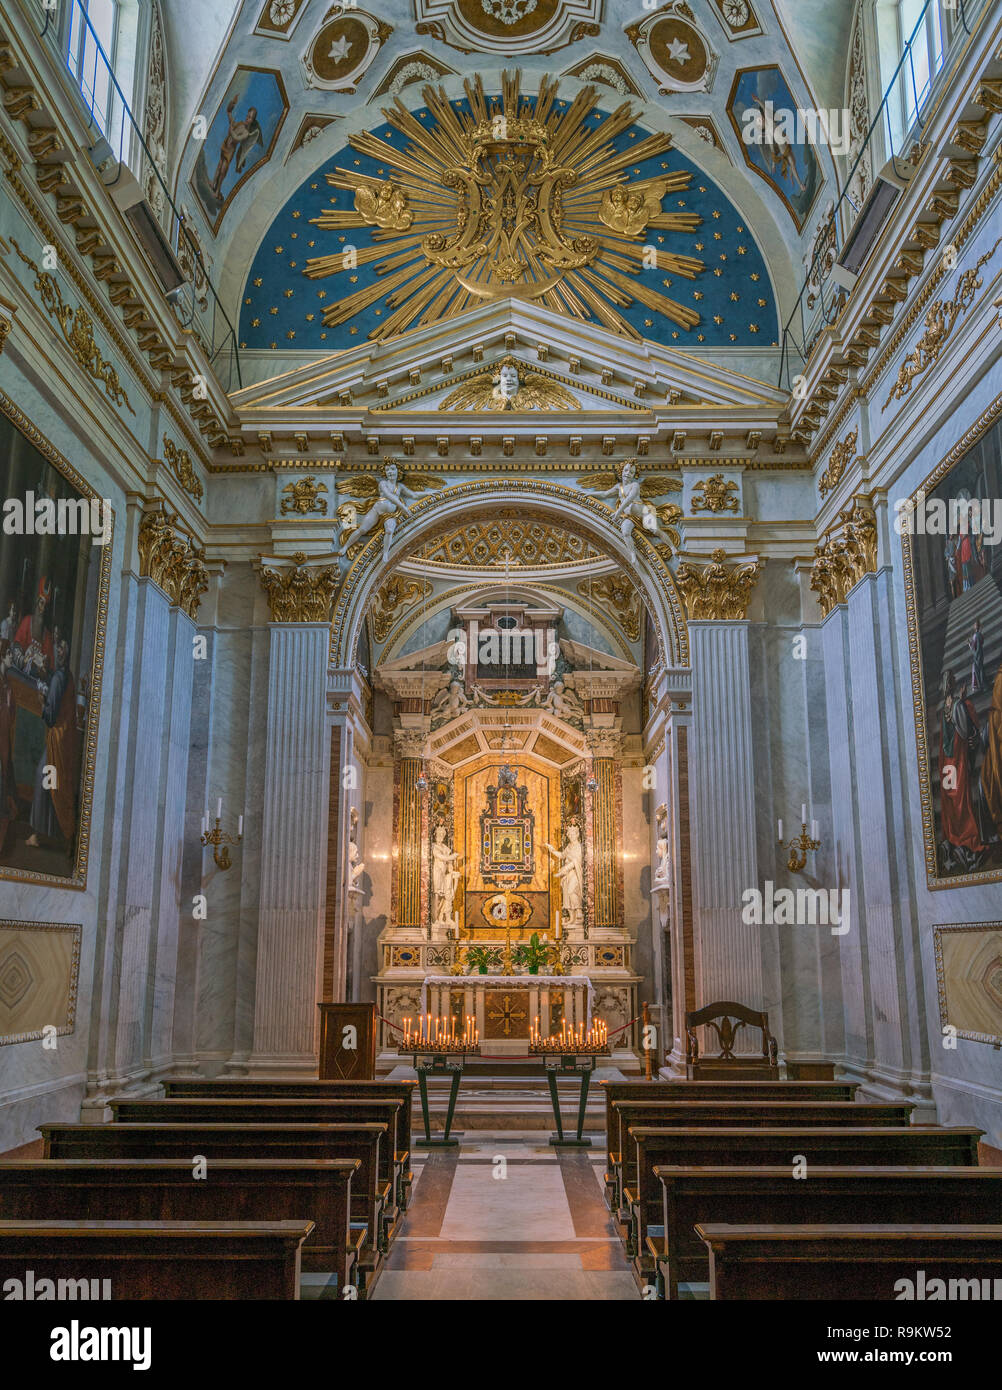 Altar in the 'Cappella della Santissima Icone' in the Duomo of Spoleto. Umbria, central Italy. Stock Photo